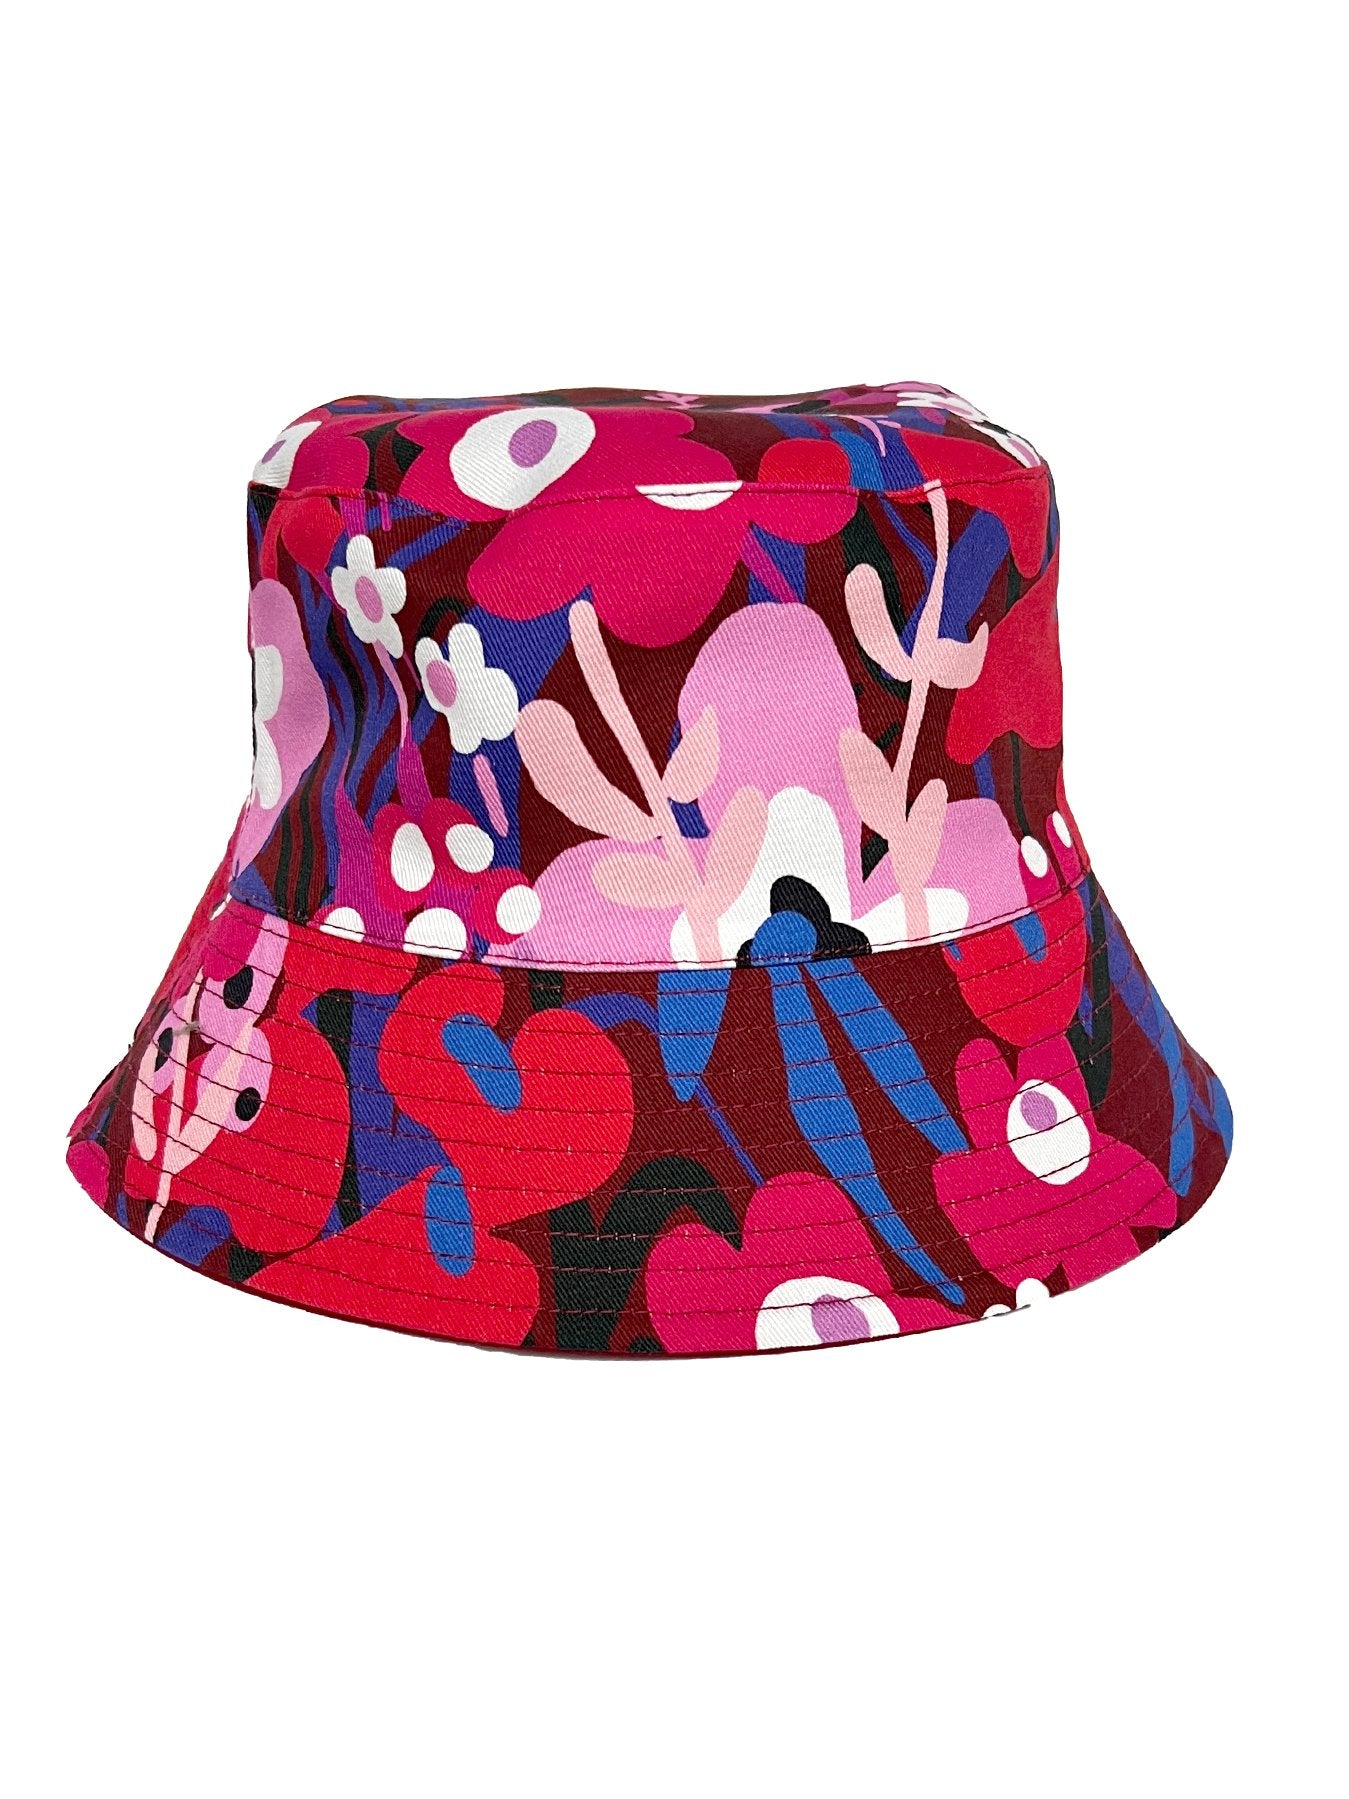 BERTA bucket hat Garden Oasis Pink - Lesley Evers-Best Seller-bucket hat-garden oasis